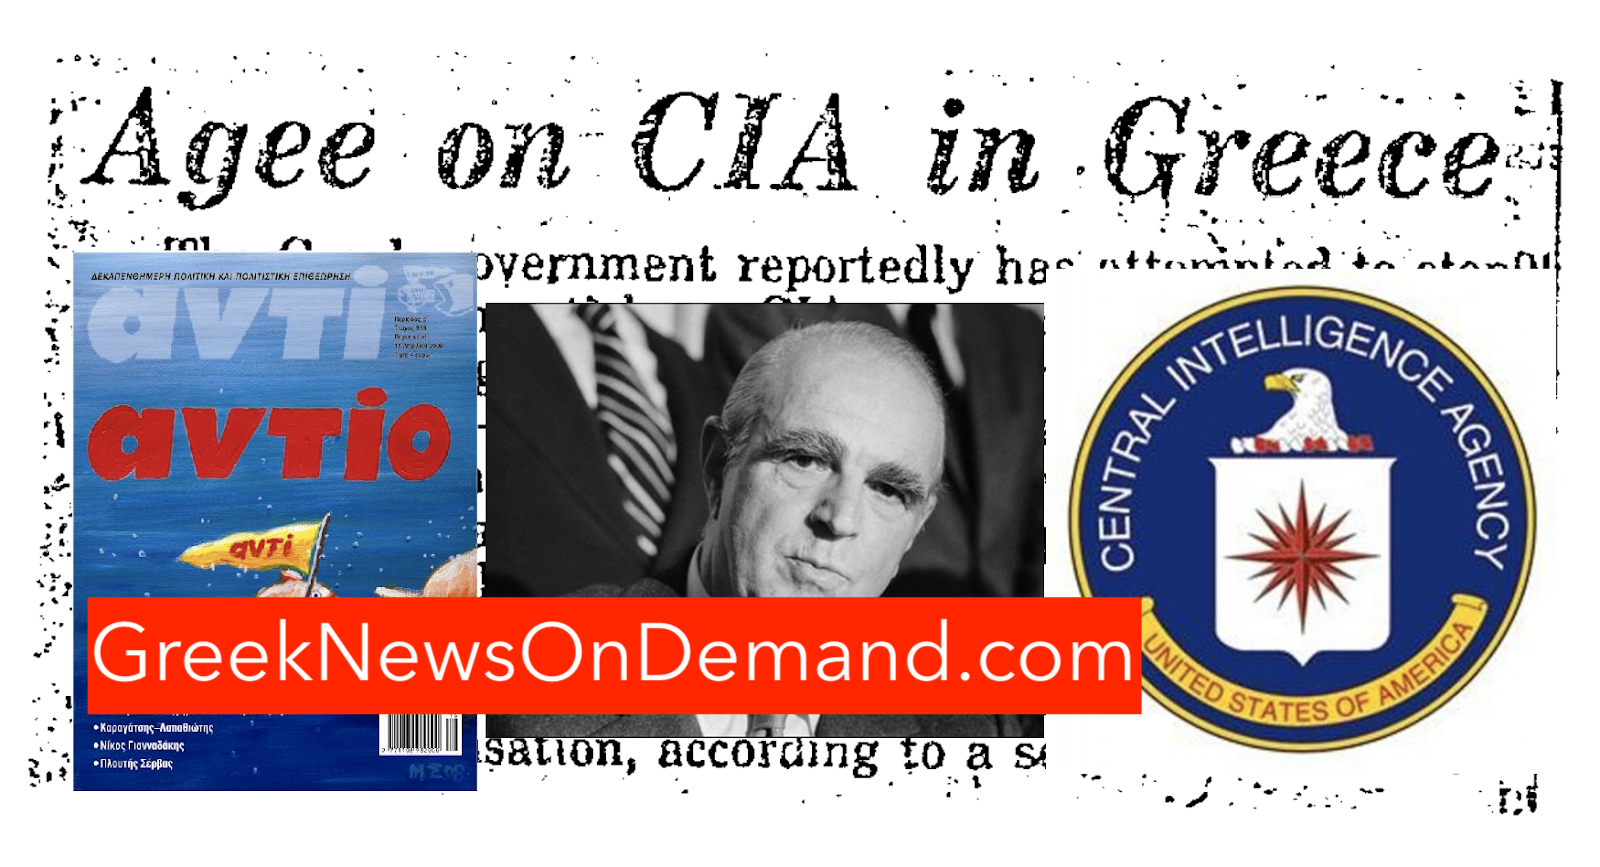 Όταν η κυβέρνηση του Καραμανλή προσπάθησε να σταματήσει δημοσίευση άρθρου σχετικά με την παρουσία της CIA στην Ελλάδα!